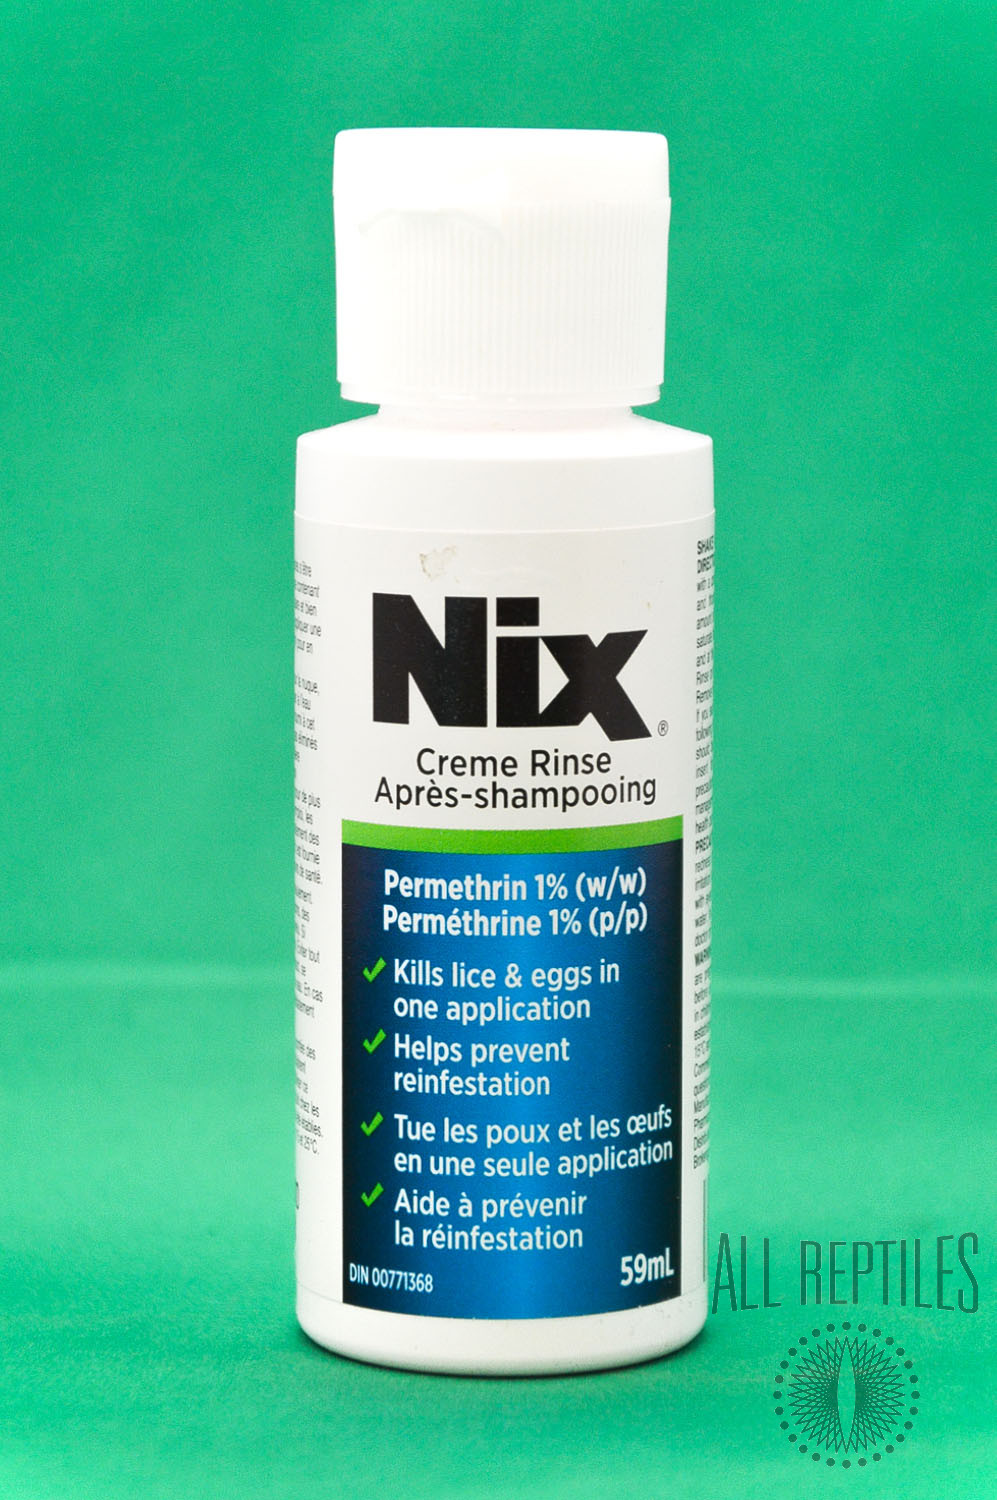 Nix Creme Rinse for Mites